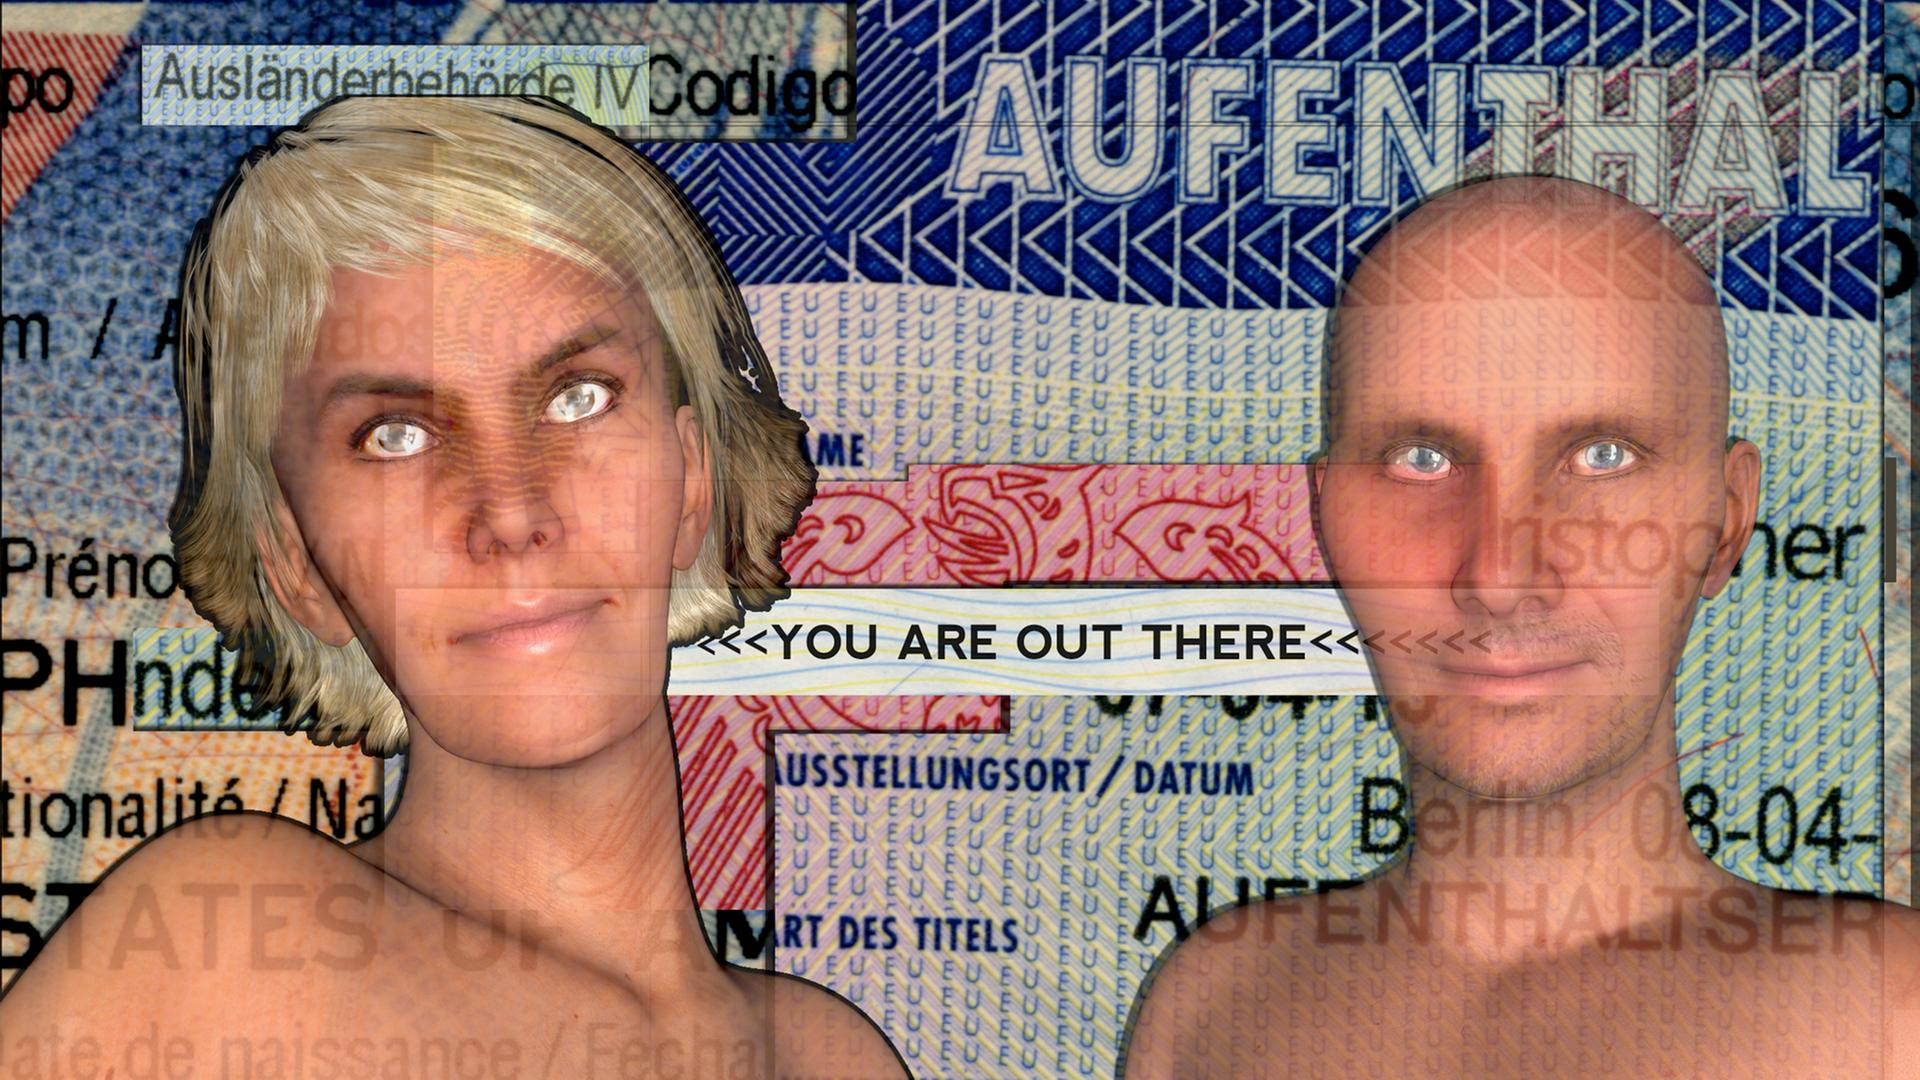 Verloren im Netz - in "You are out there" des Digital Art-Duos Chris Kondek und Christiane Kühl geht es um die Flut persönlicher Daten im Internet